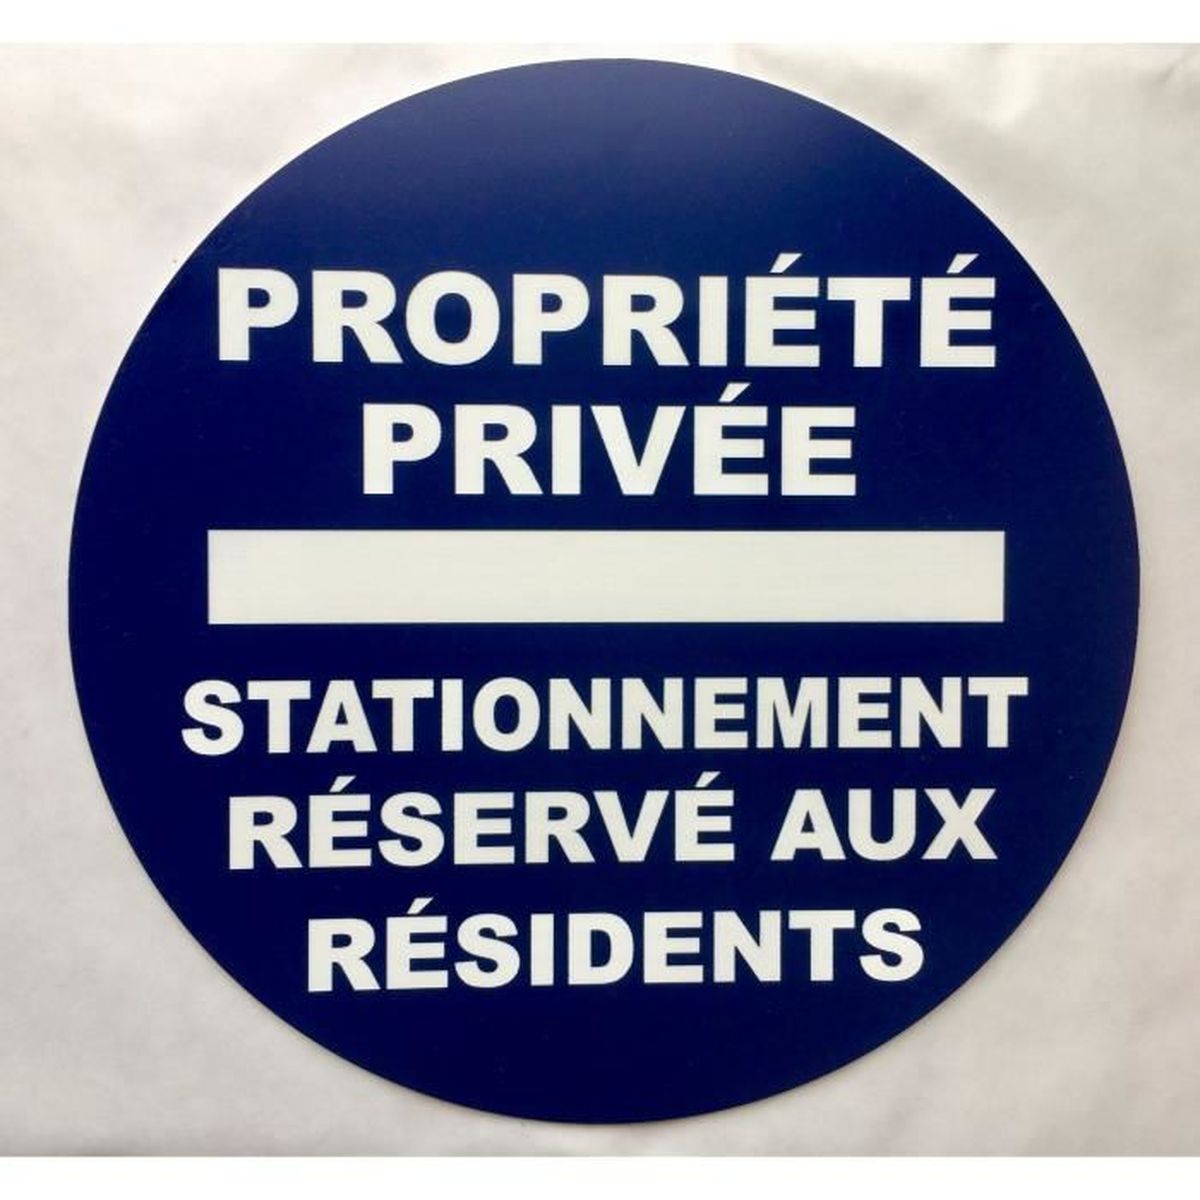 Panneau parking privé réservé aux résidents 